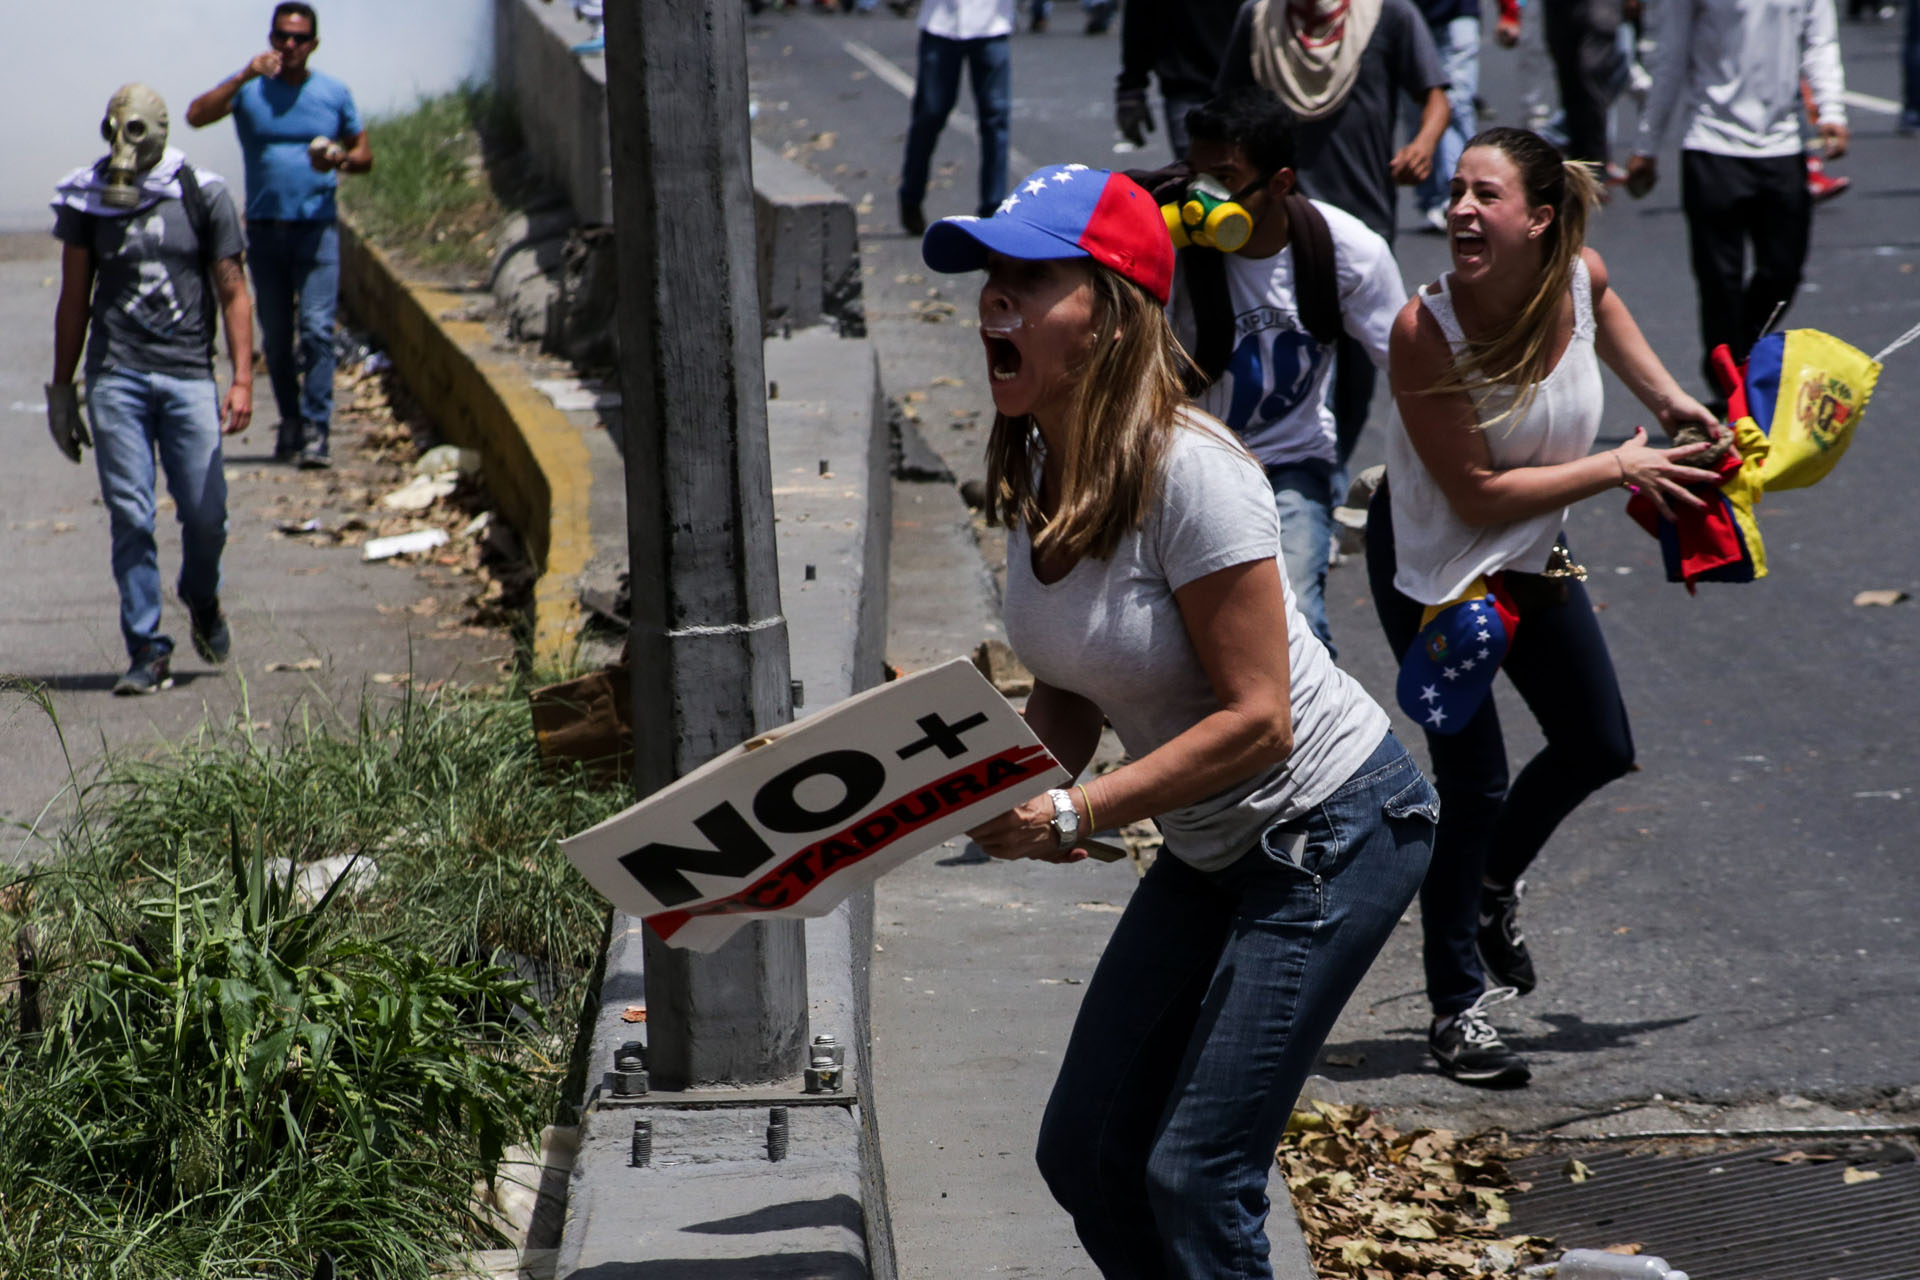 CAR01. CARACAS (VENEZUELA), 06/04/2017 - Un grupo de personas participa en una manifestación de opositores al gobierno de Nicolás Maduro hoy, jueves 6 de abril de 2017, en Caracas (Venezuela). La Policía Nacional Bolivariana (PNB) dispersó hoy con gases lacrimógenos y agua una marcha opositora en Caracas que pretendía llegar hasta la Defensoría del Pueblo para pedir su respaldo al proceso iniciado por el Parlamento contra siete magistrados del Tribunal Supremo de Justicia (TSJ). EFE/CRISTIAN HERNÁNDEZ